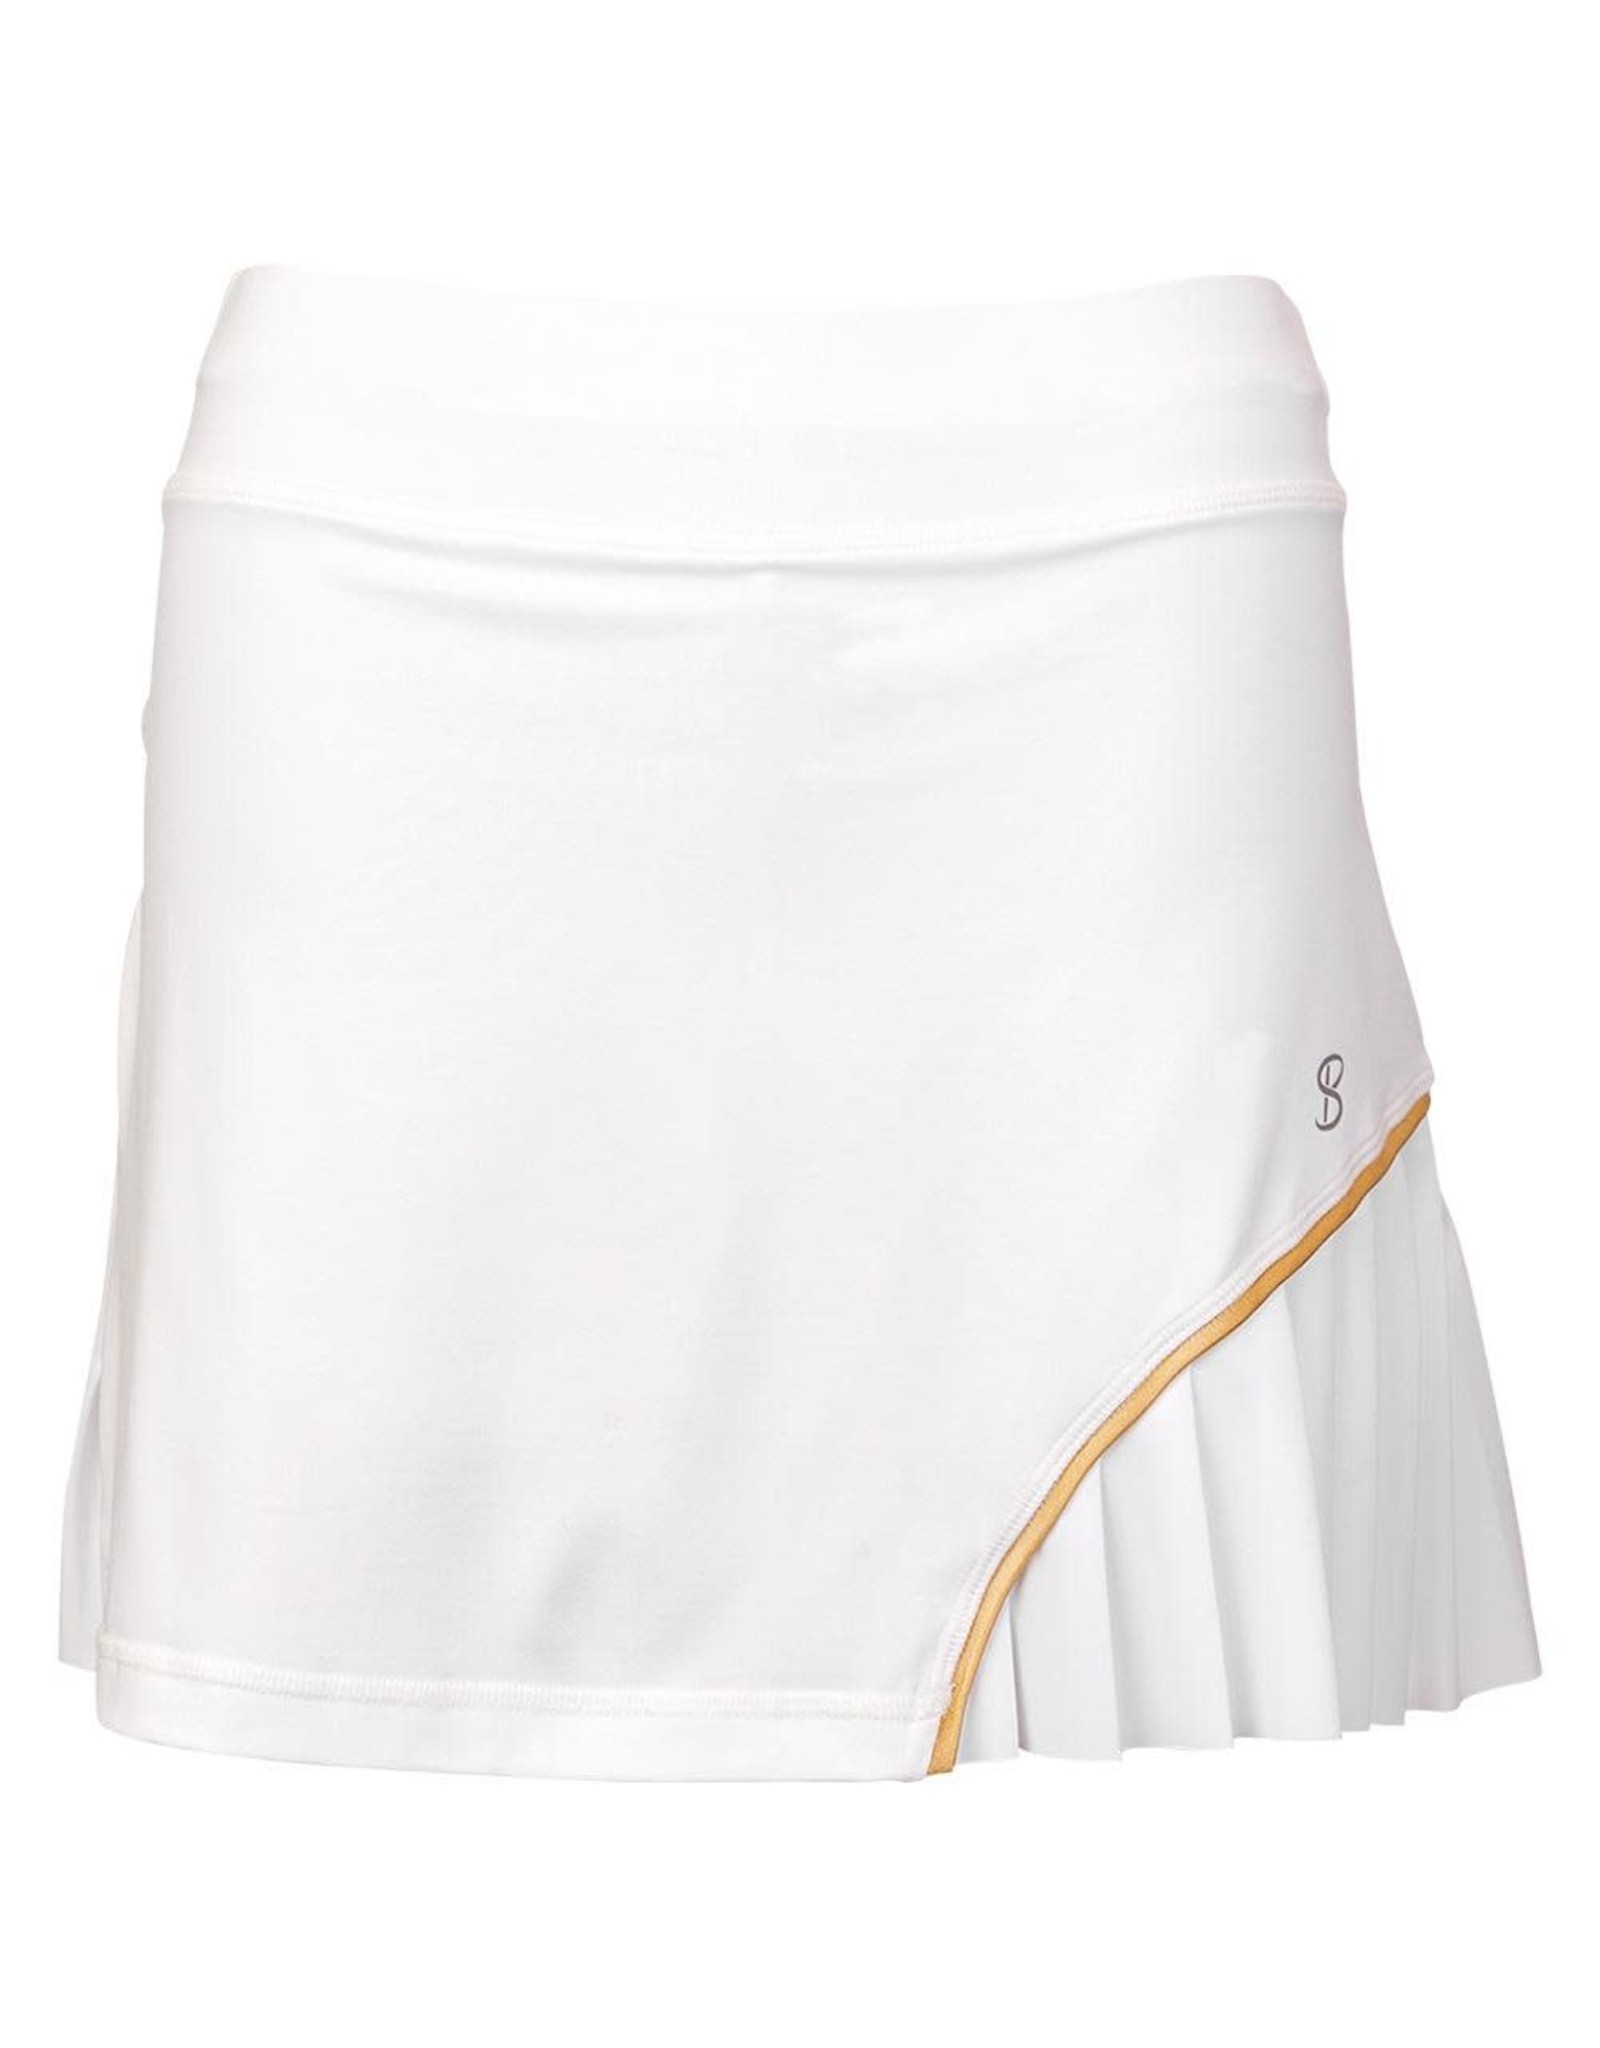 Sofibella Club Lux 14 inch Skirt